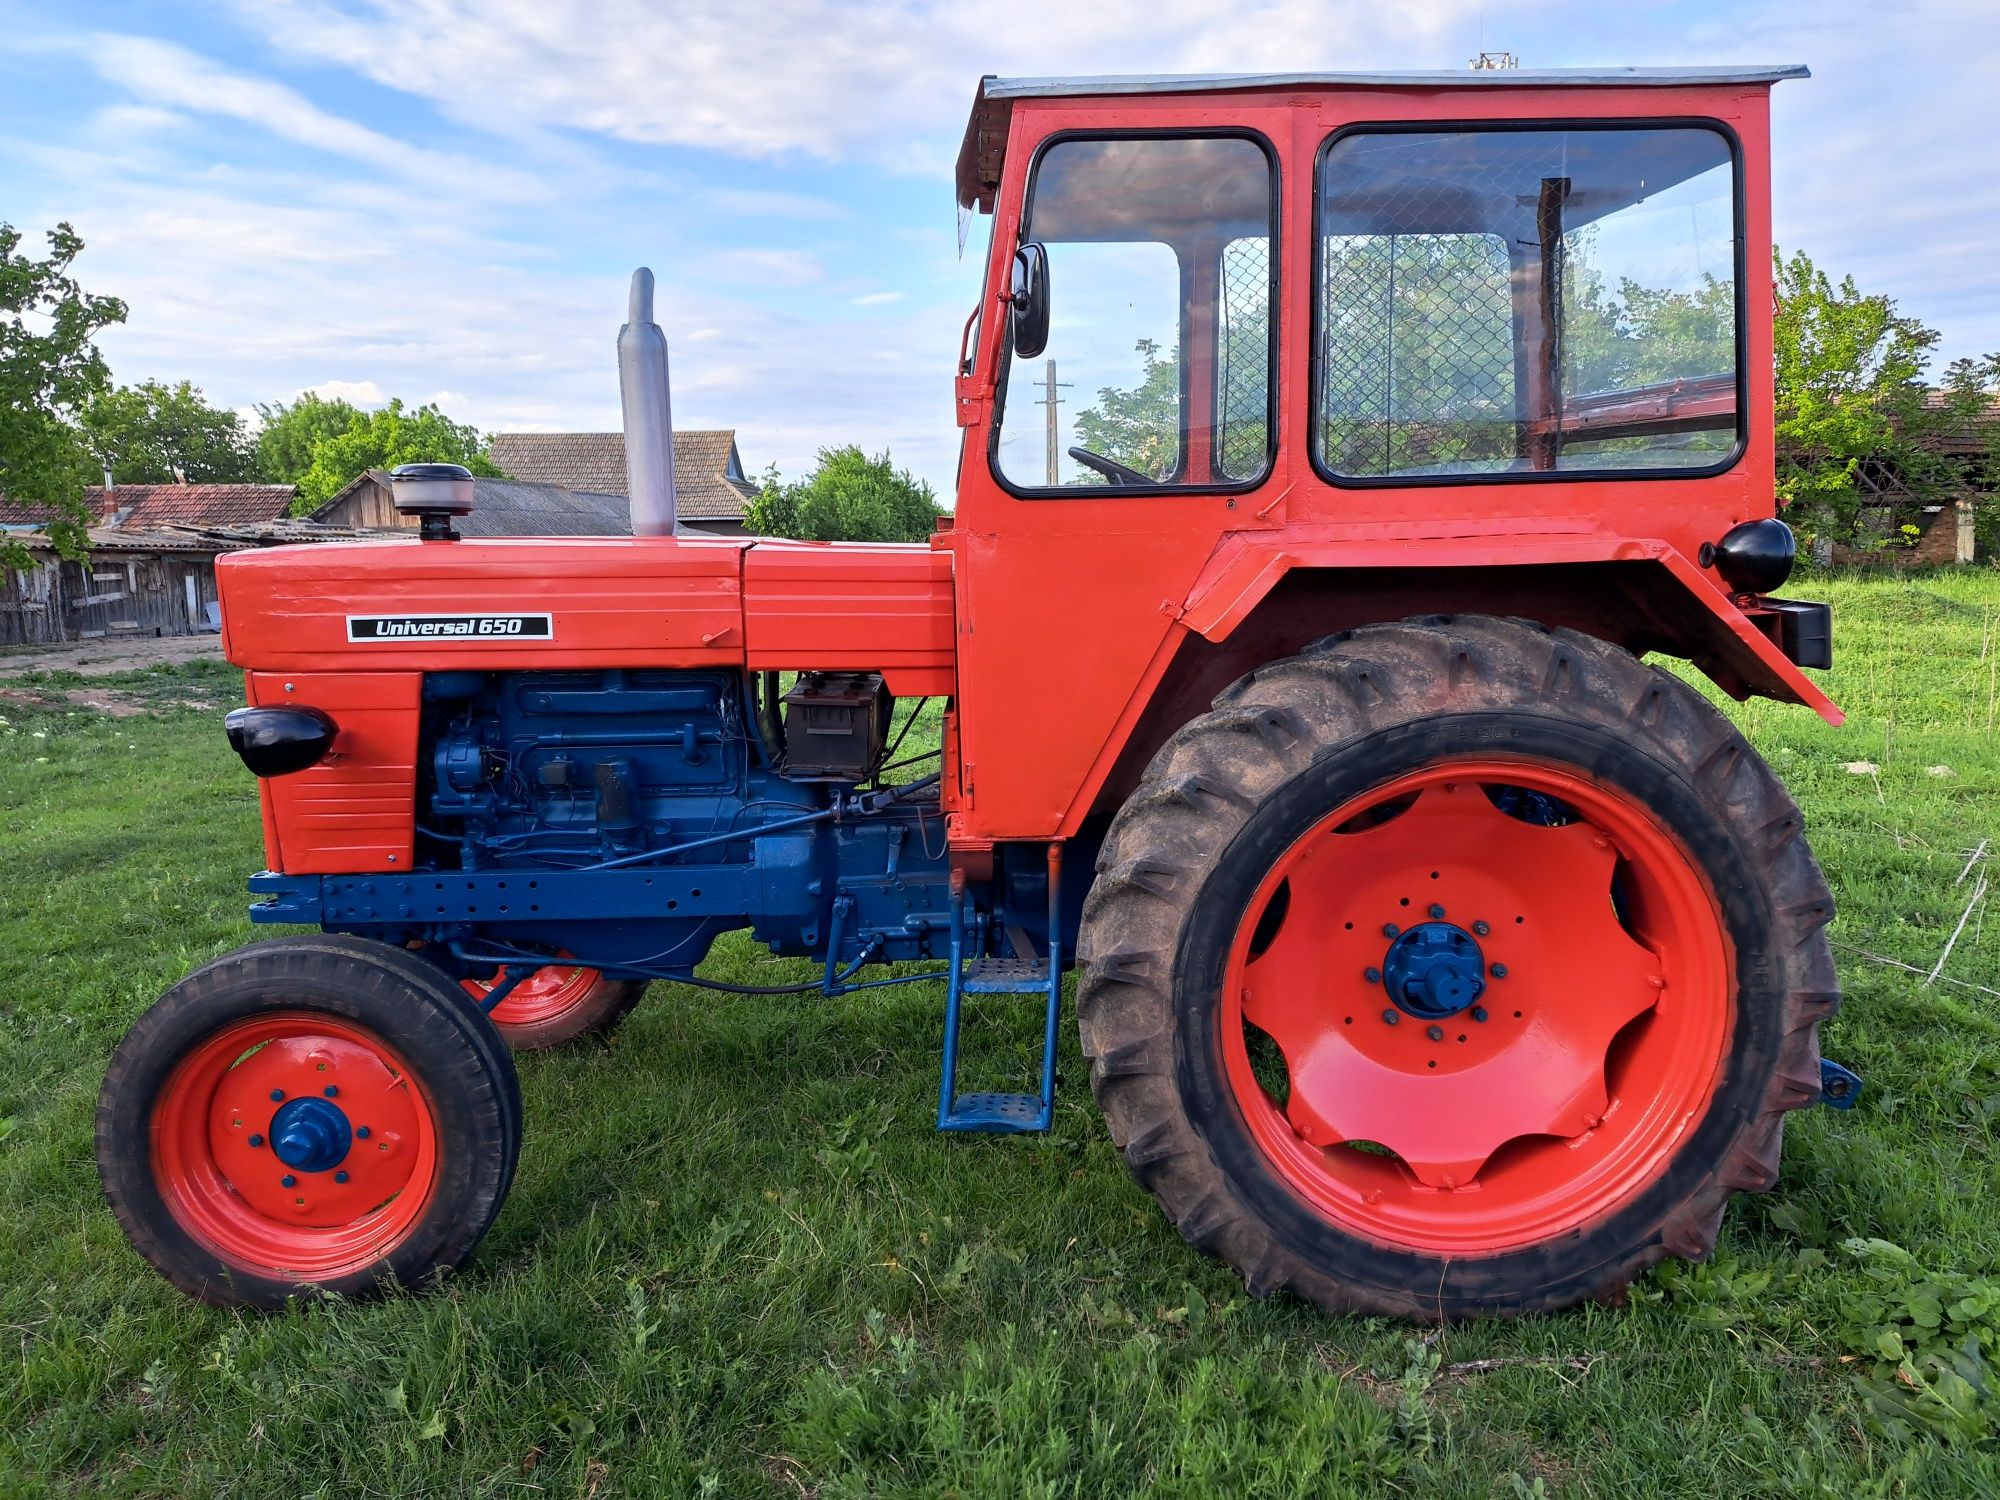 Vând tractor U650 impecabil